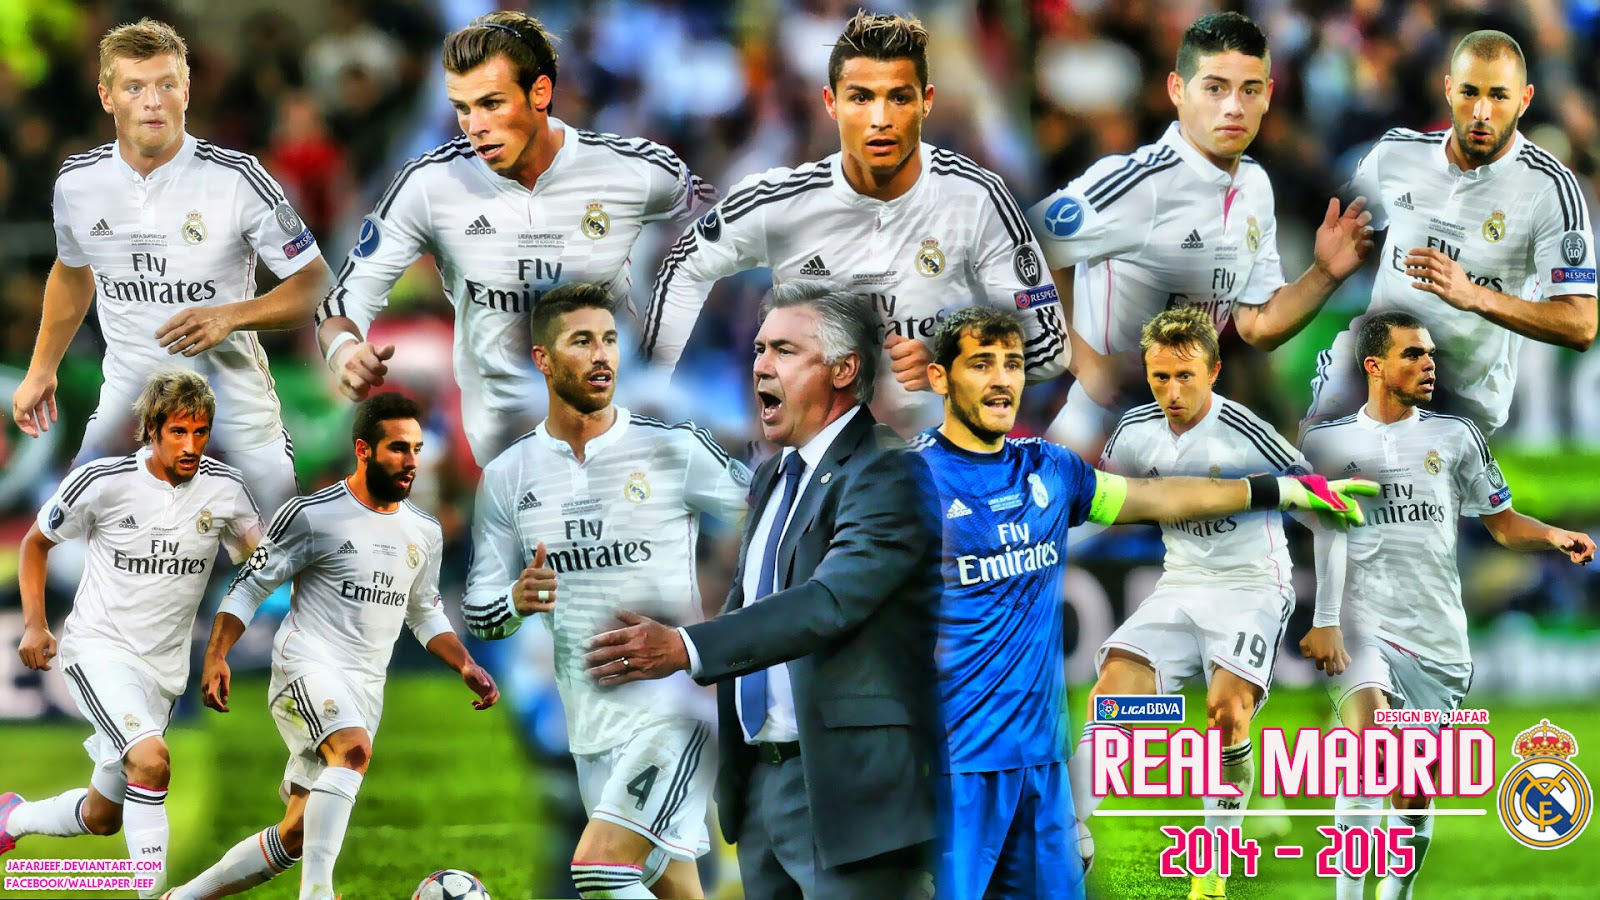 [48+] Real Madrid Wallpaper 2014 2015 on WallpaperSafari